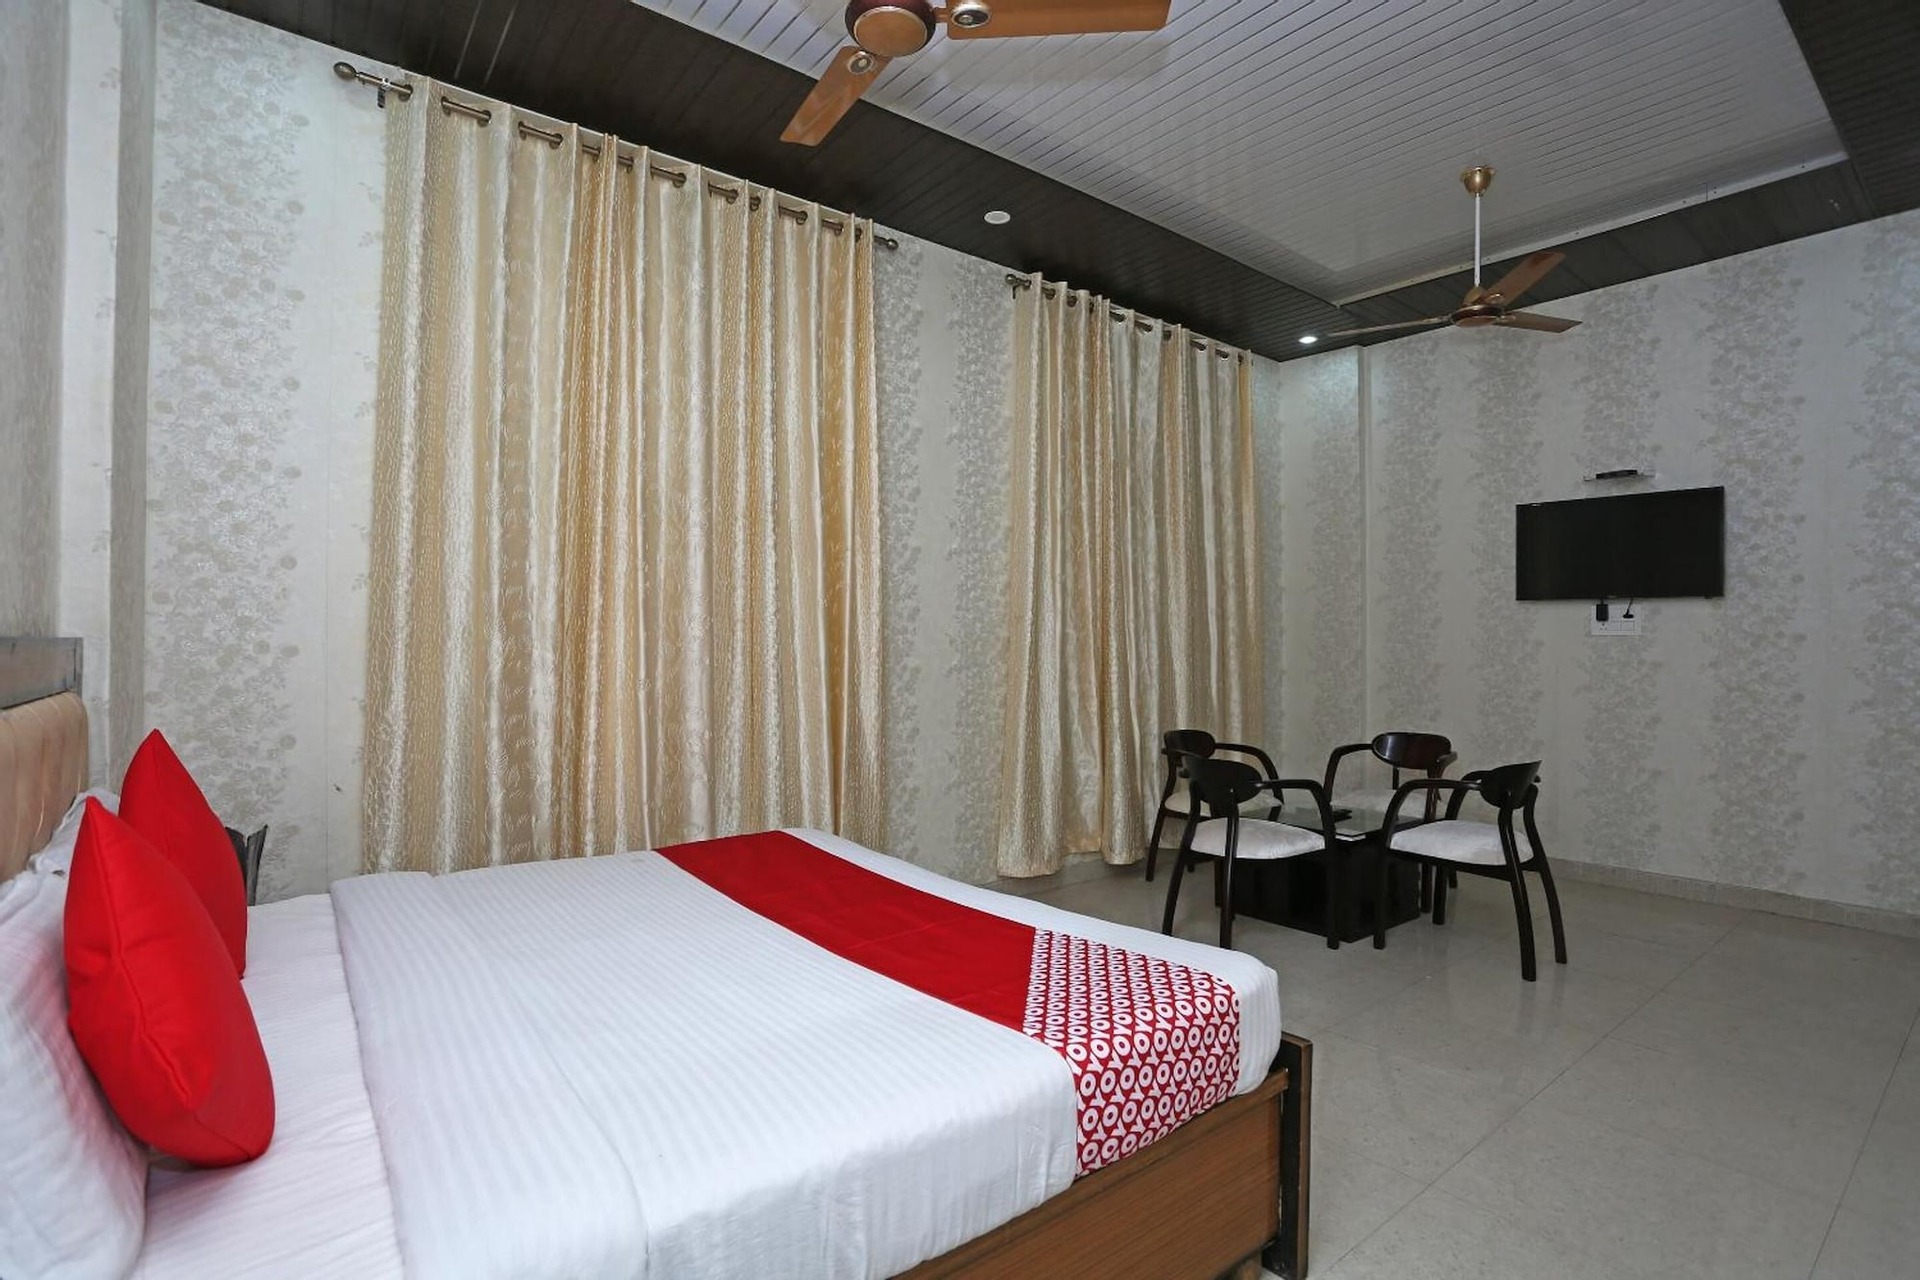 Bedroom 3, Sudhir Hotels, Sonipat